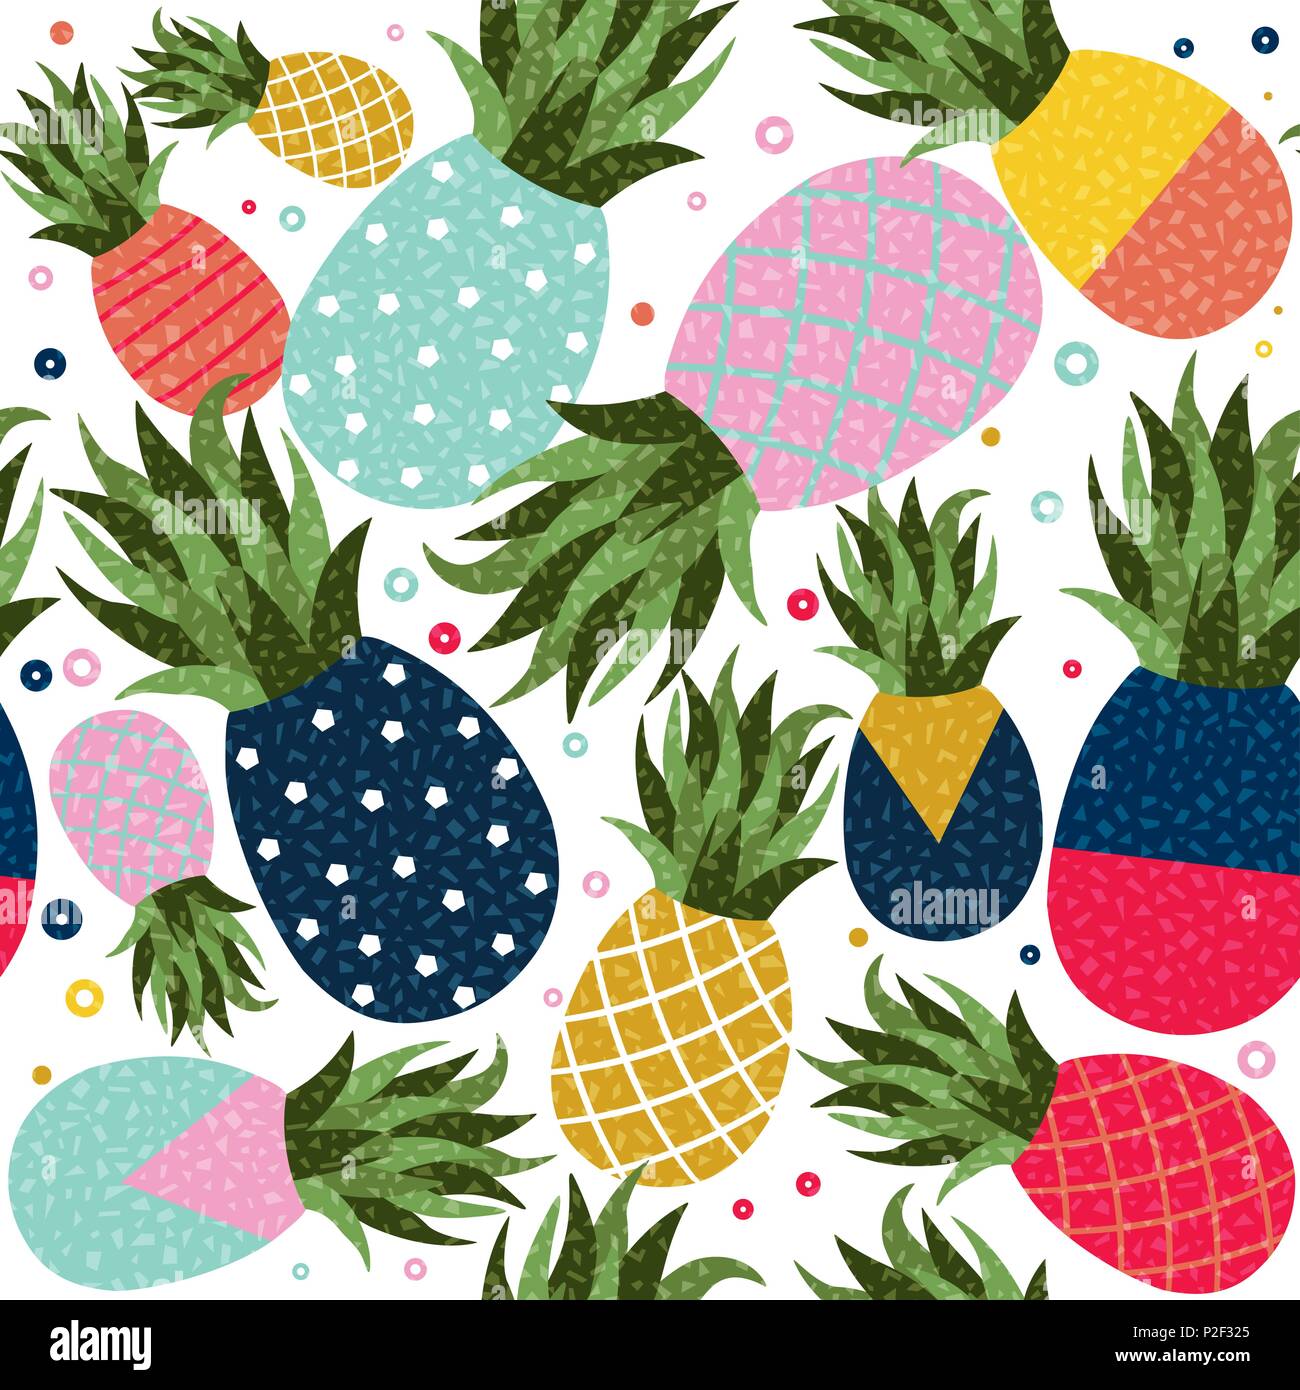 Sans illustration, motif ananas memphis coloré de fruits style rétro arrière-plan. Forme géométrique abstraite décoration pour l'été. Vecteur EPS10. Illustration de Vecteur